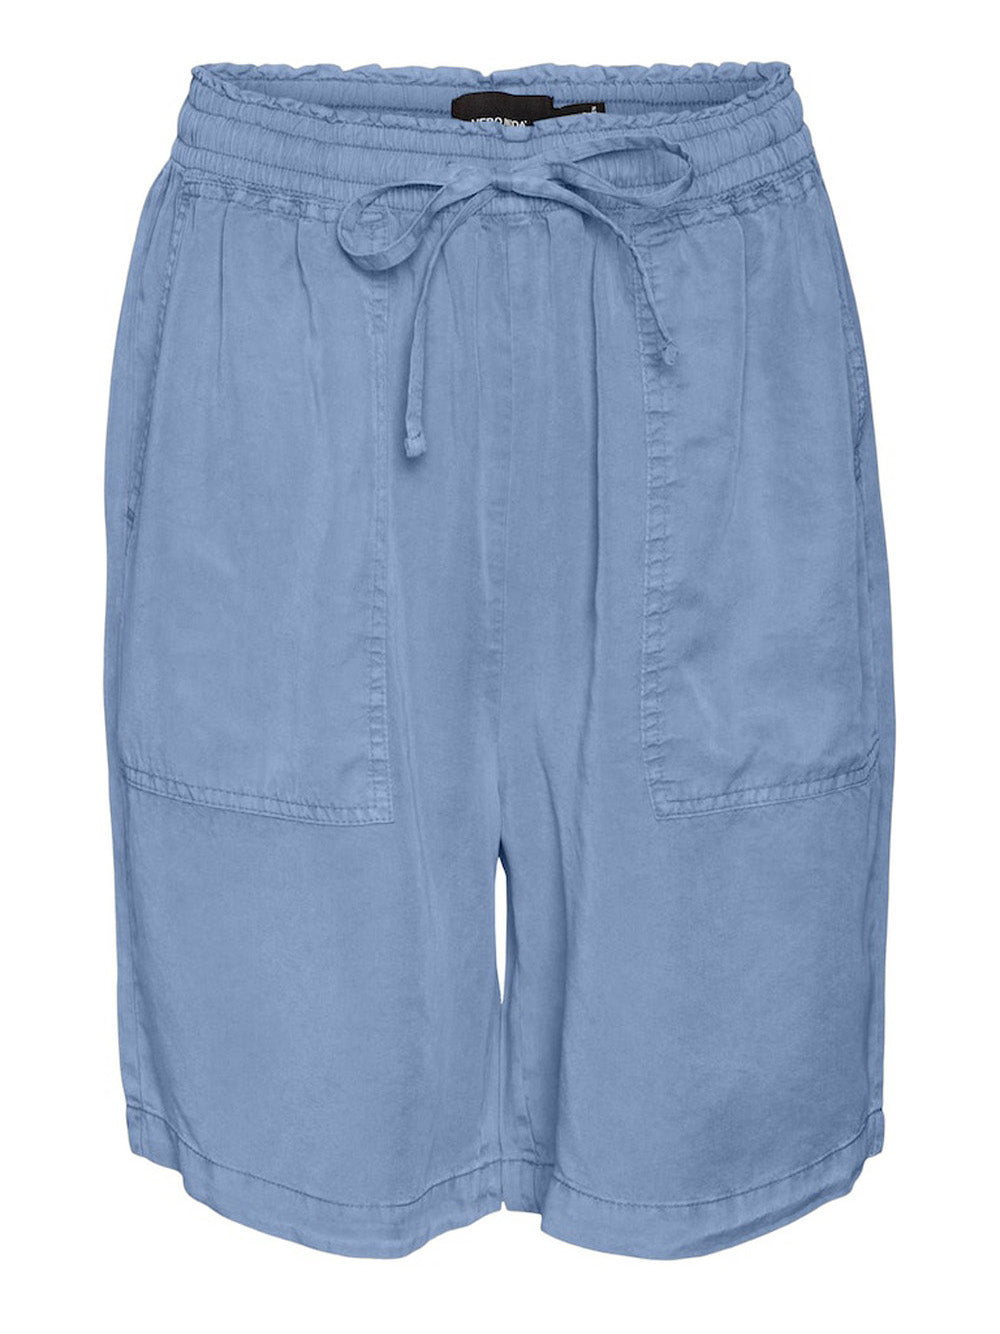 VERO MODA Shorts Donna - Blu modello 10304896